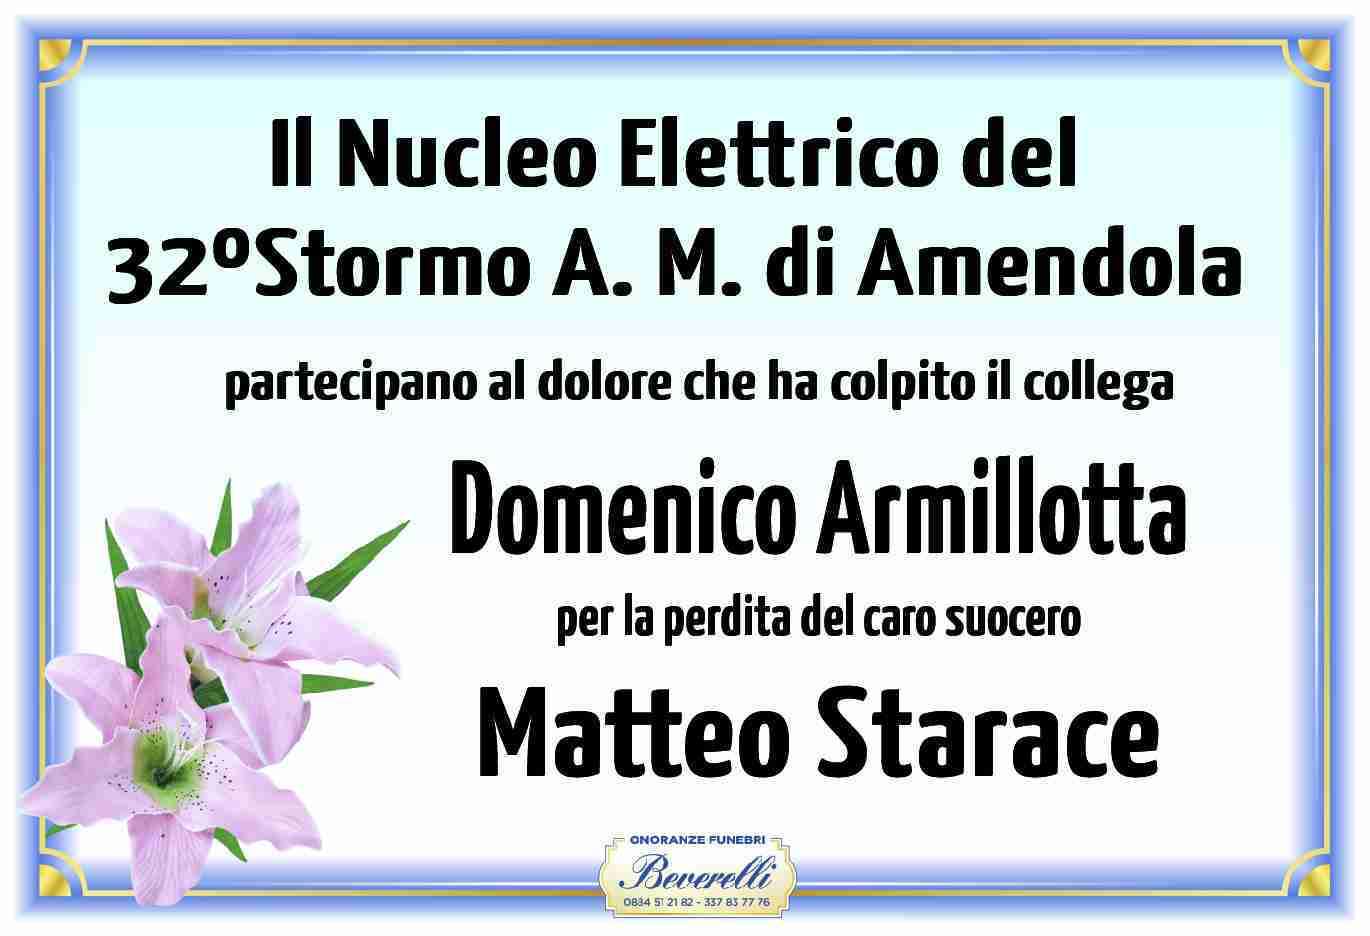 Matteo Starace